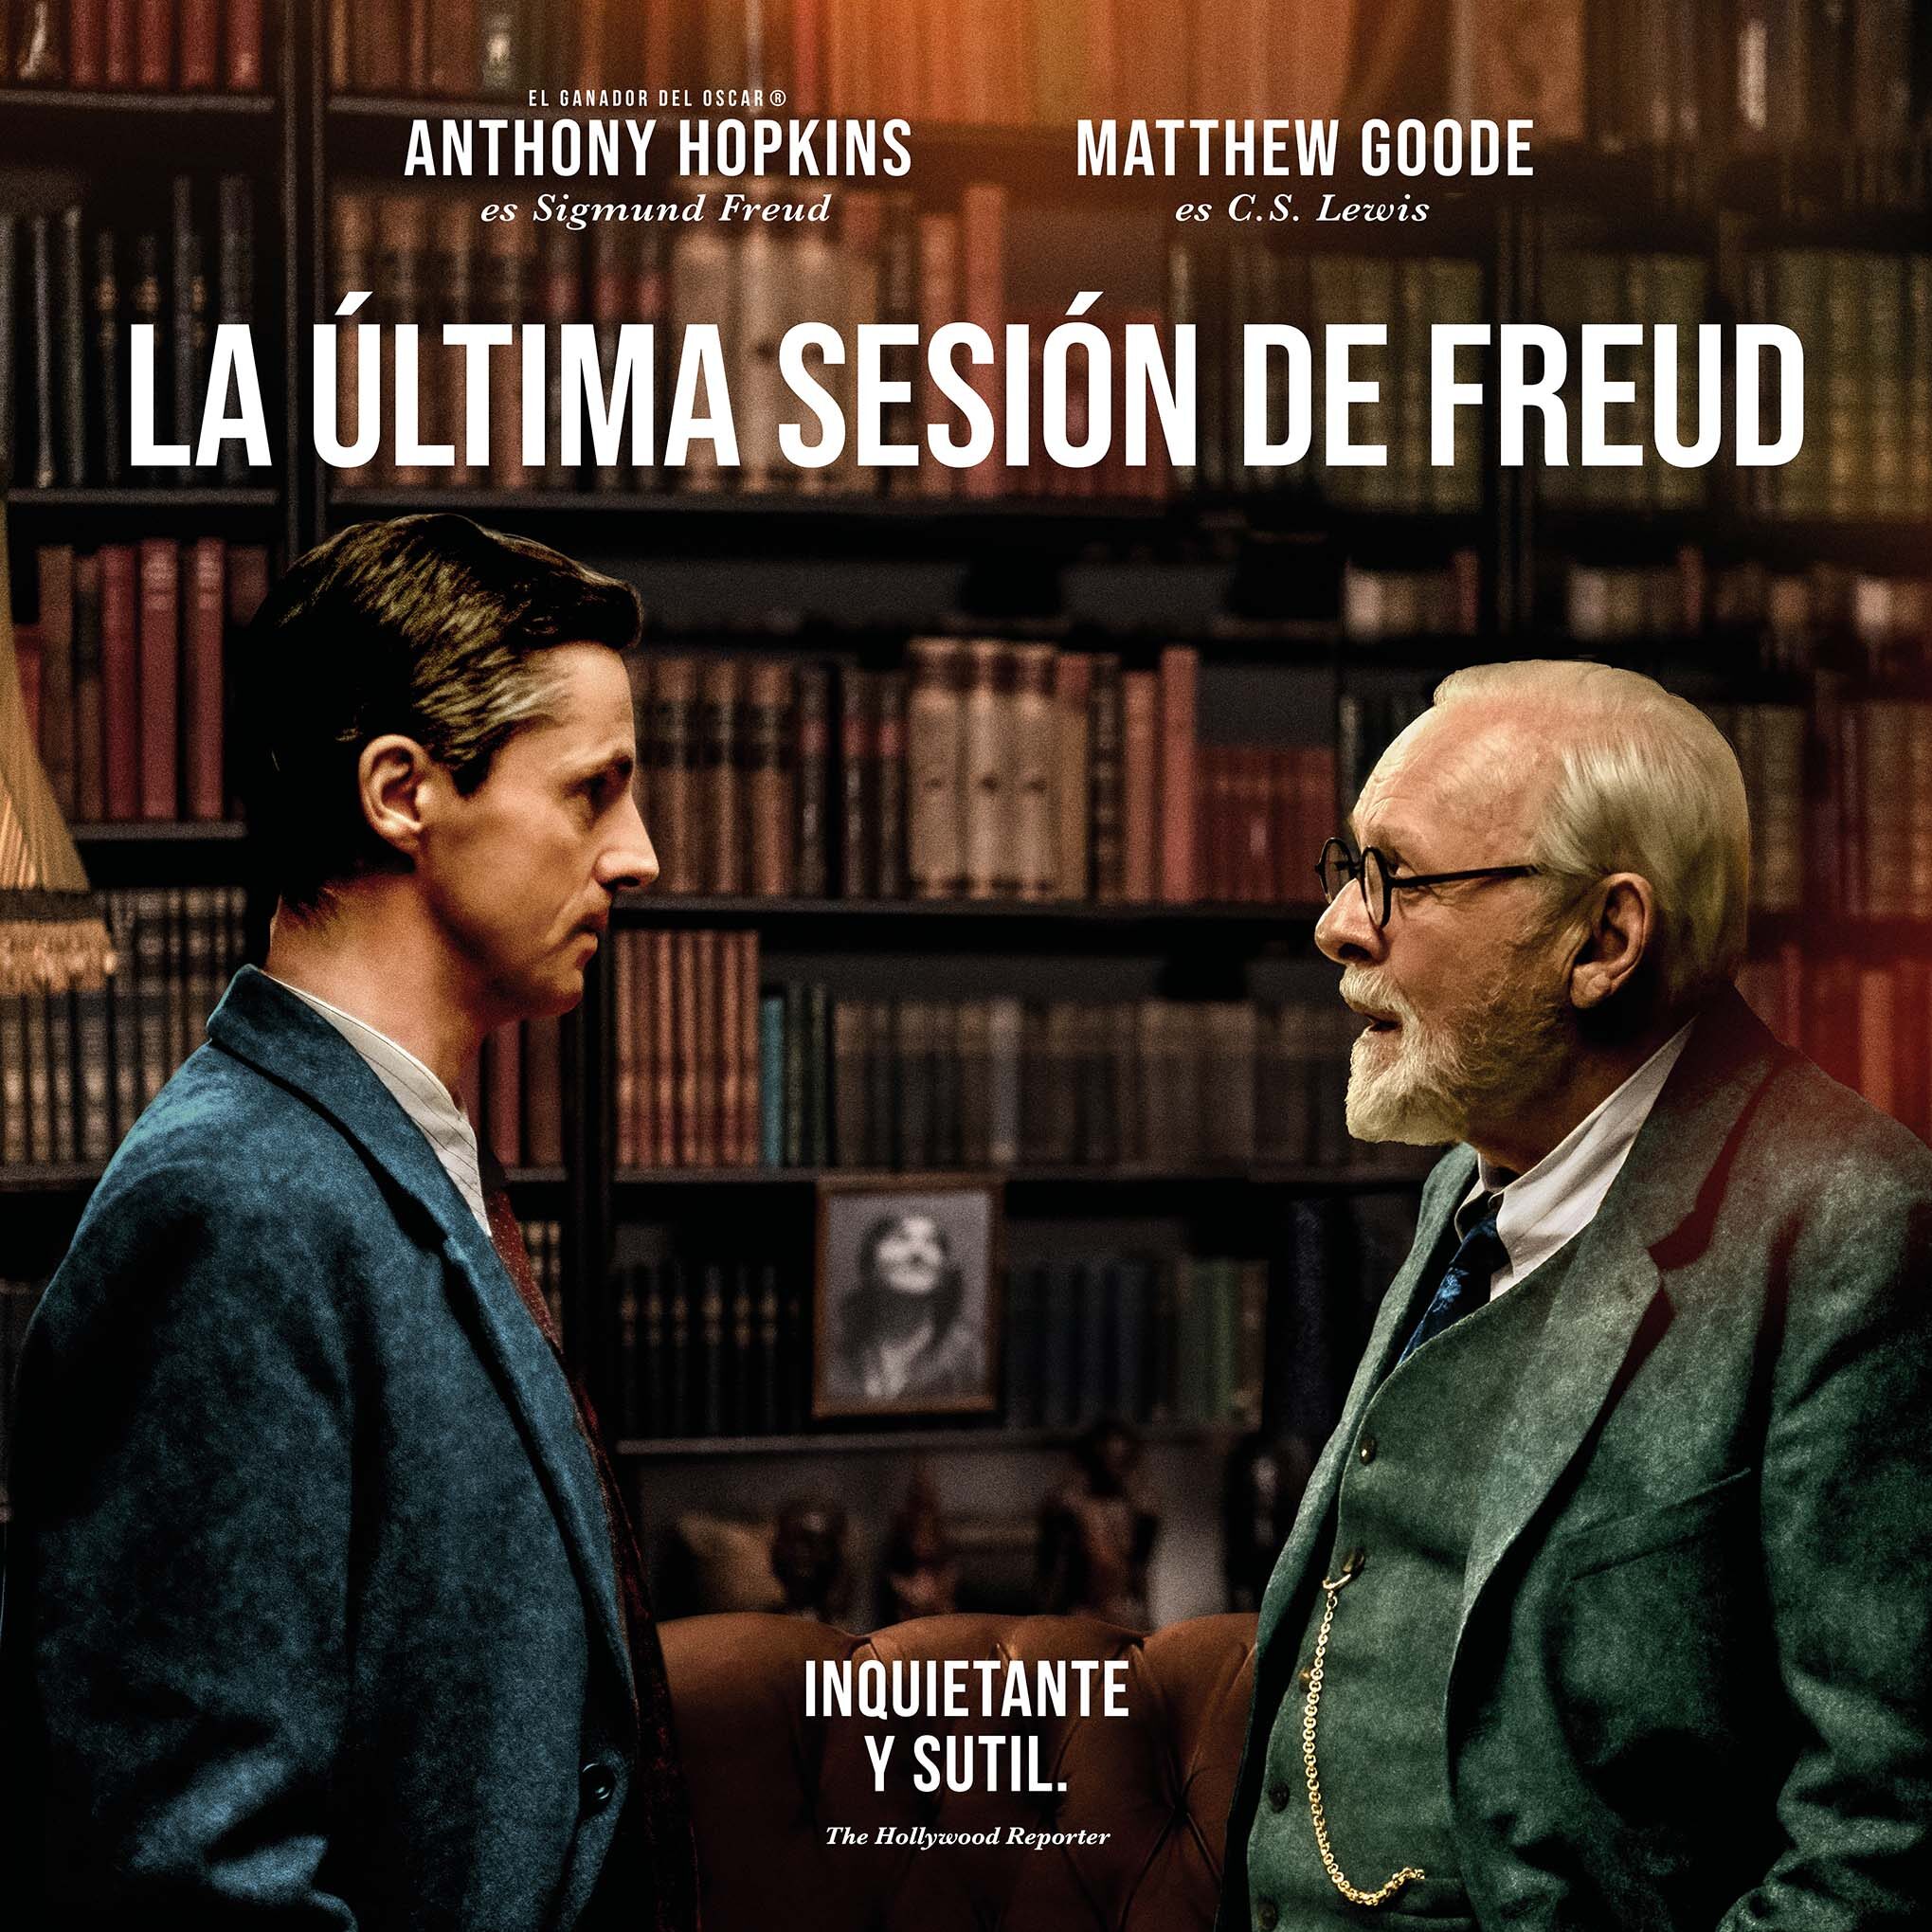 La última sesión de Freud, mucho más que una película